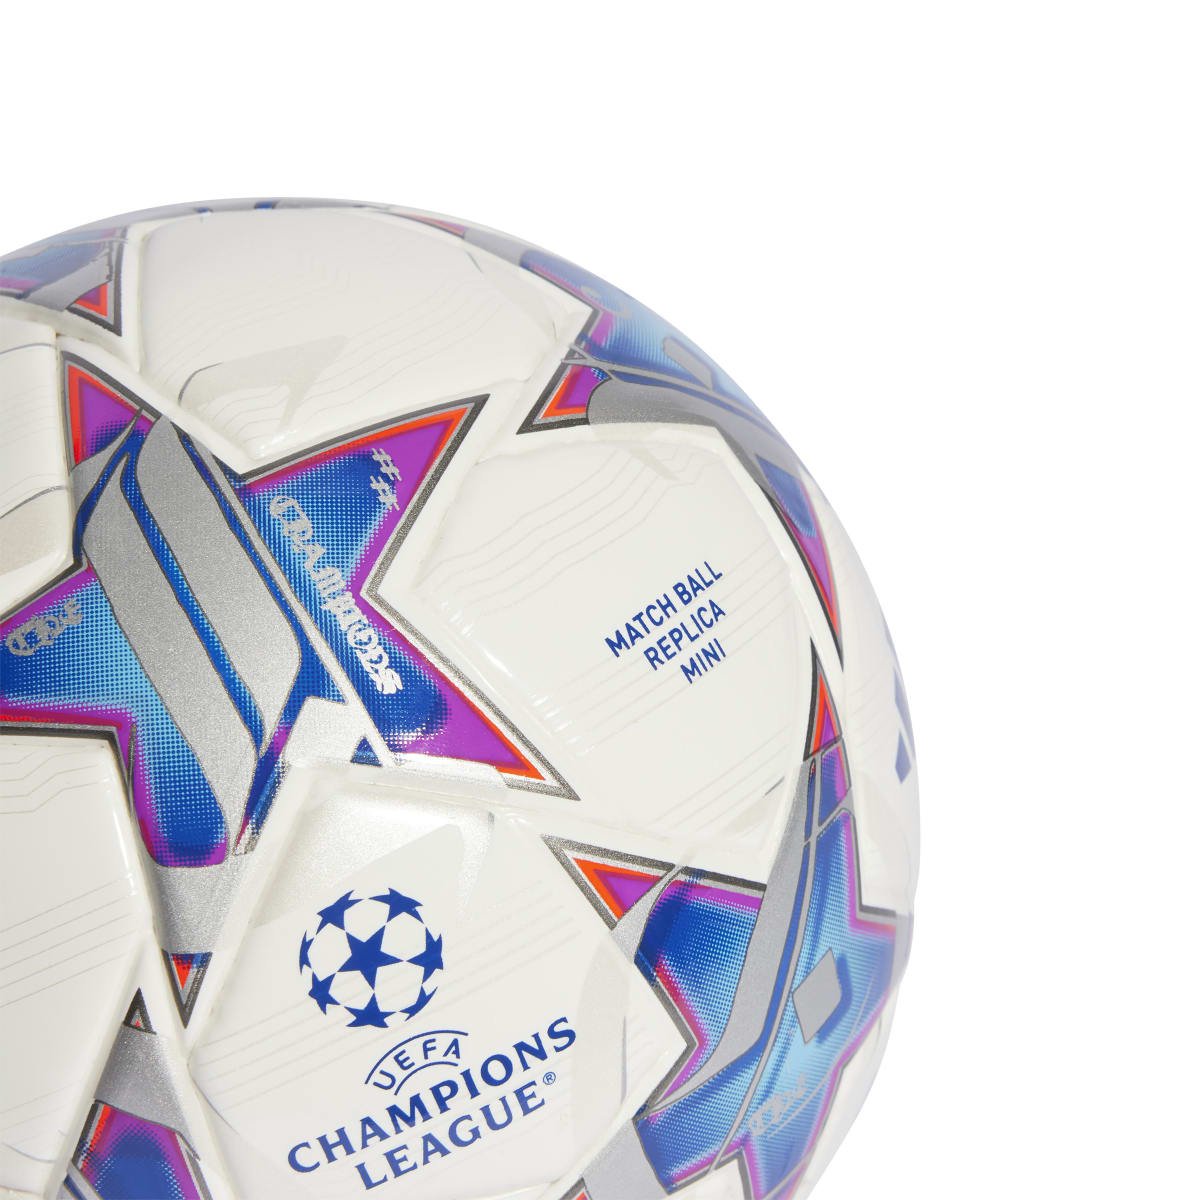 Inspirada nos hinos, Adidas lança bolas das Champions League 2023